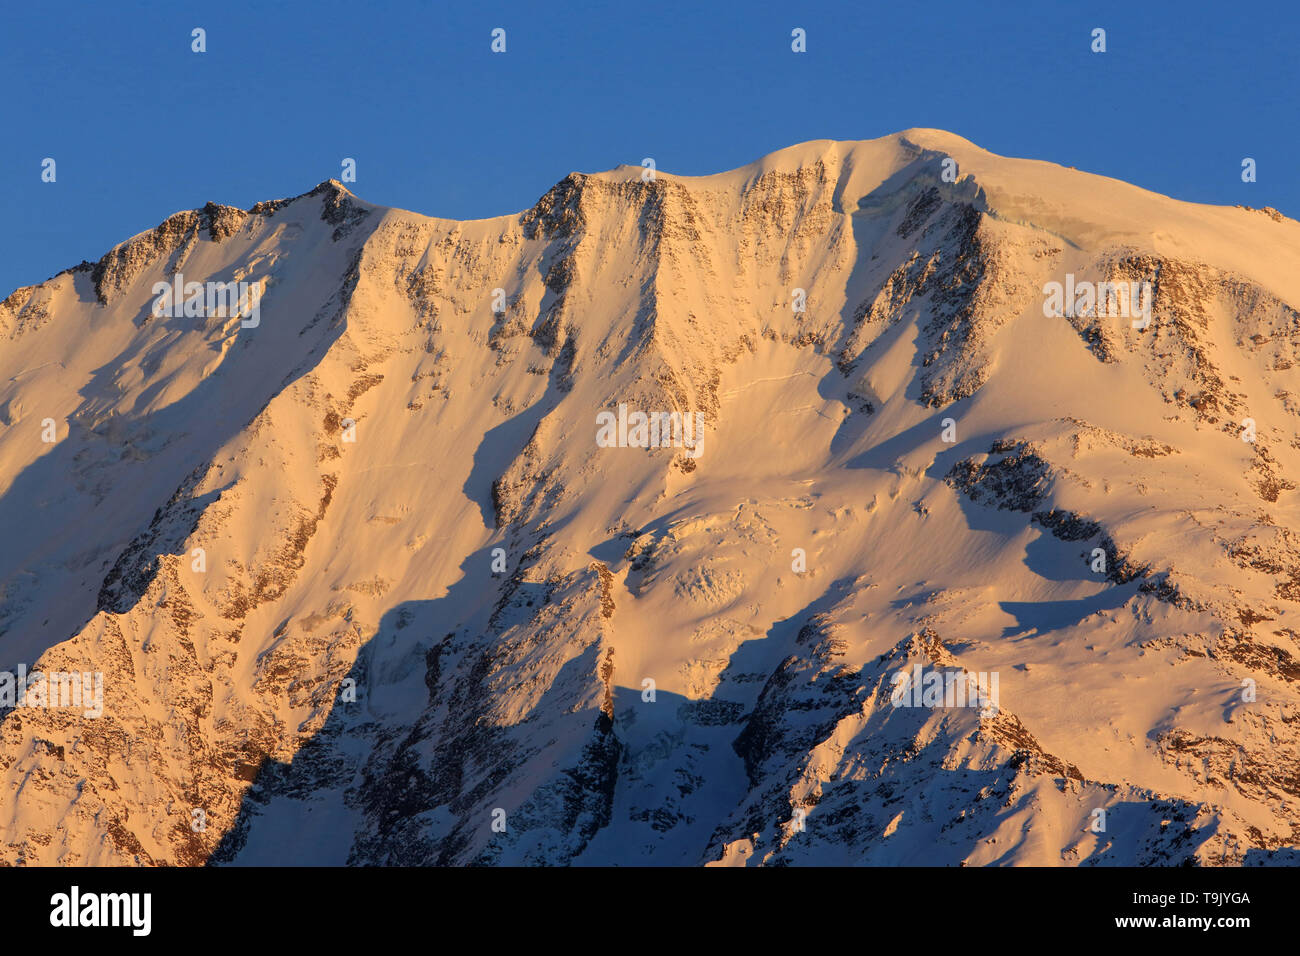 Dôme de Miage. Massif du Mont-Blanc. Alpes françaises. Haute-Savoie. France. Stock Photo